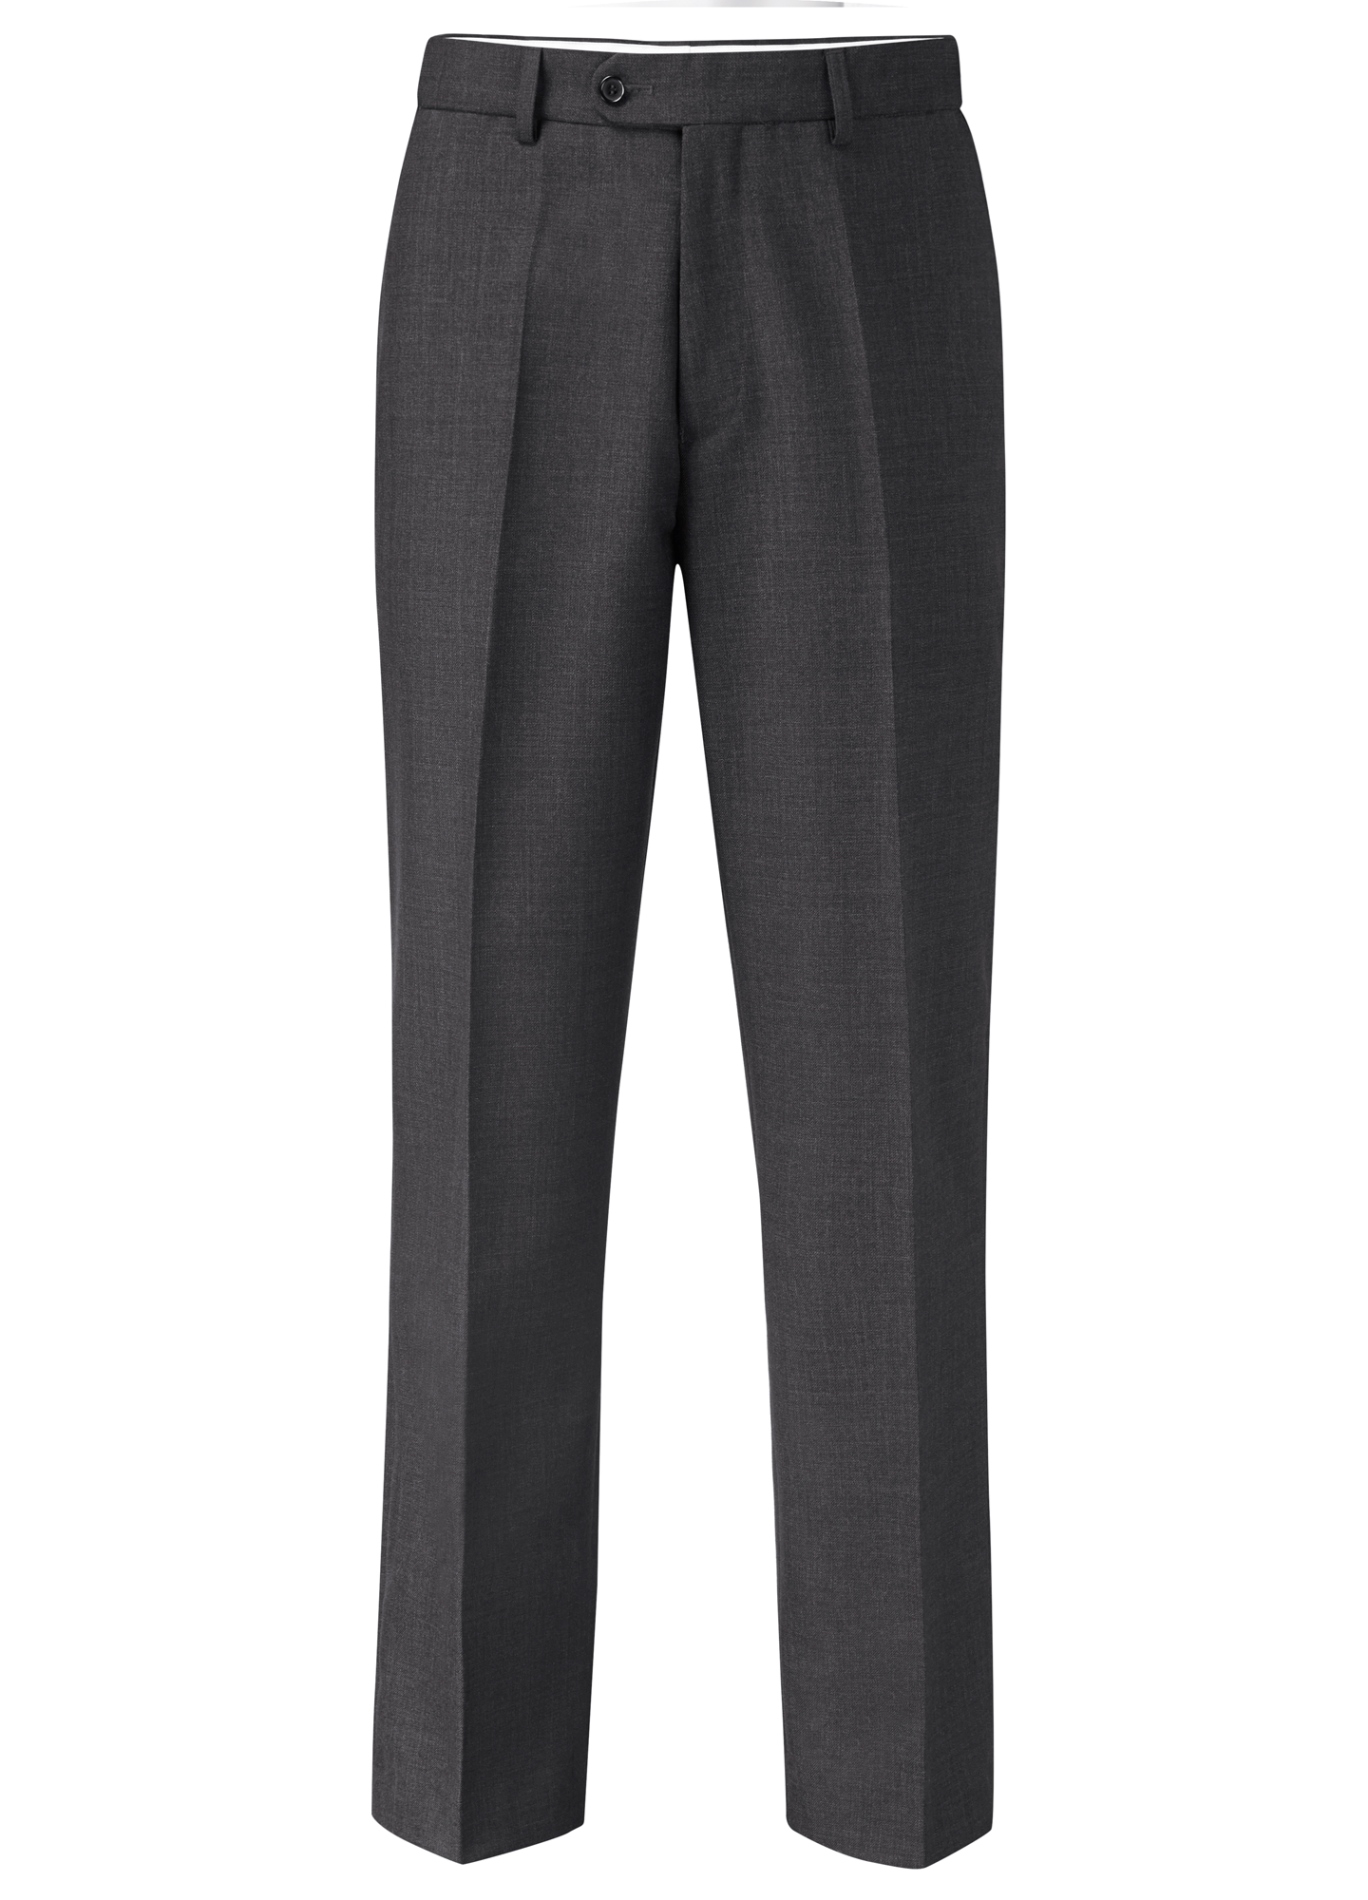 Duke Flexi Waist Formal Trouser - Clothing from Chatleys Menswear UK